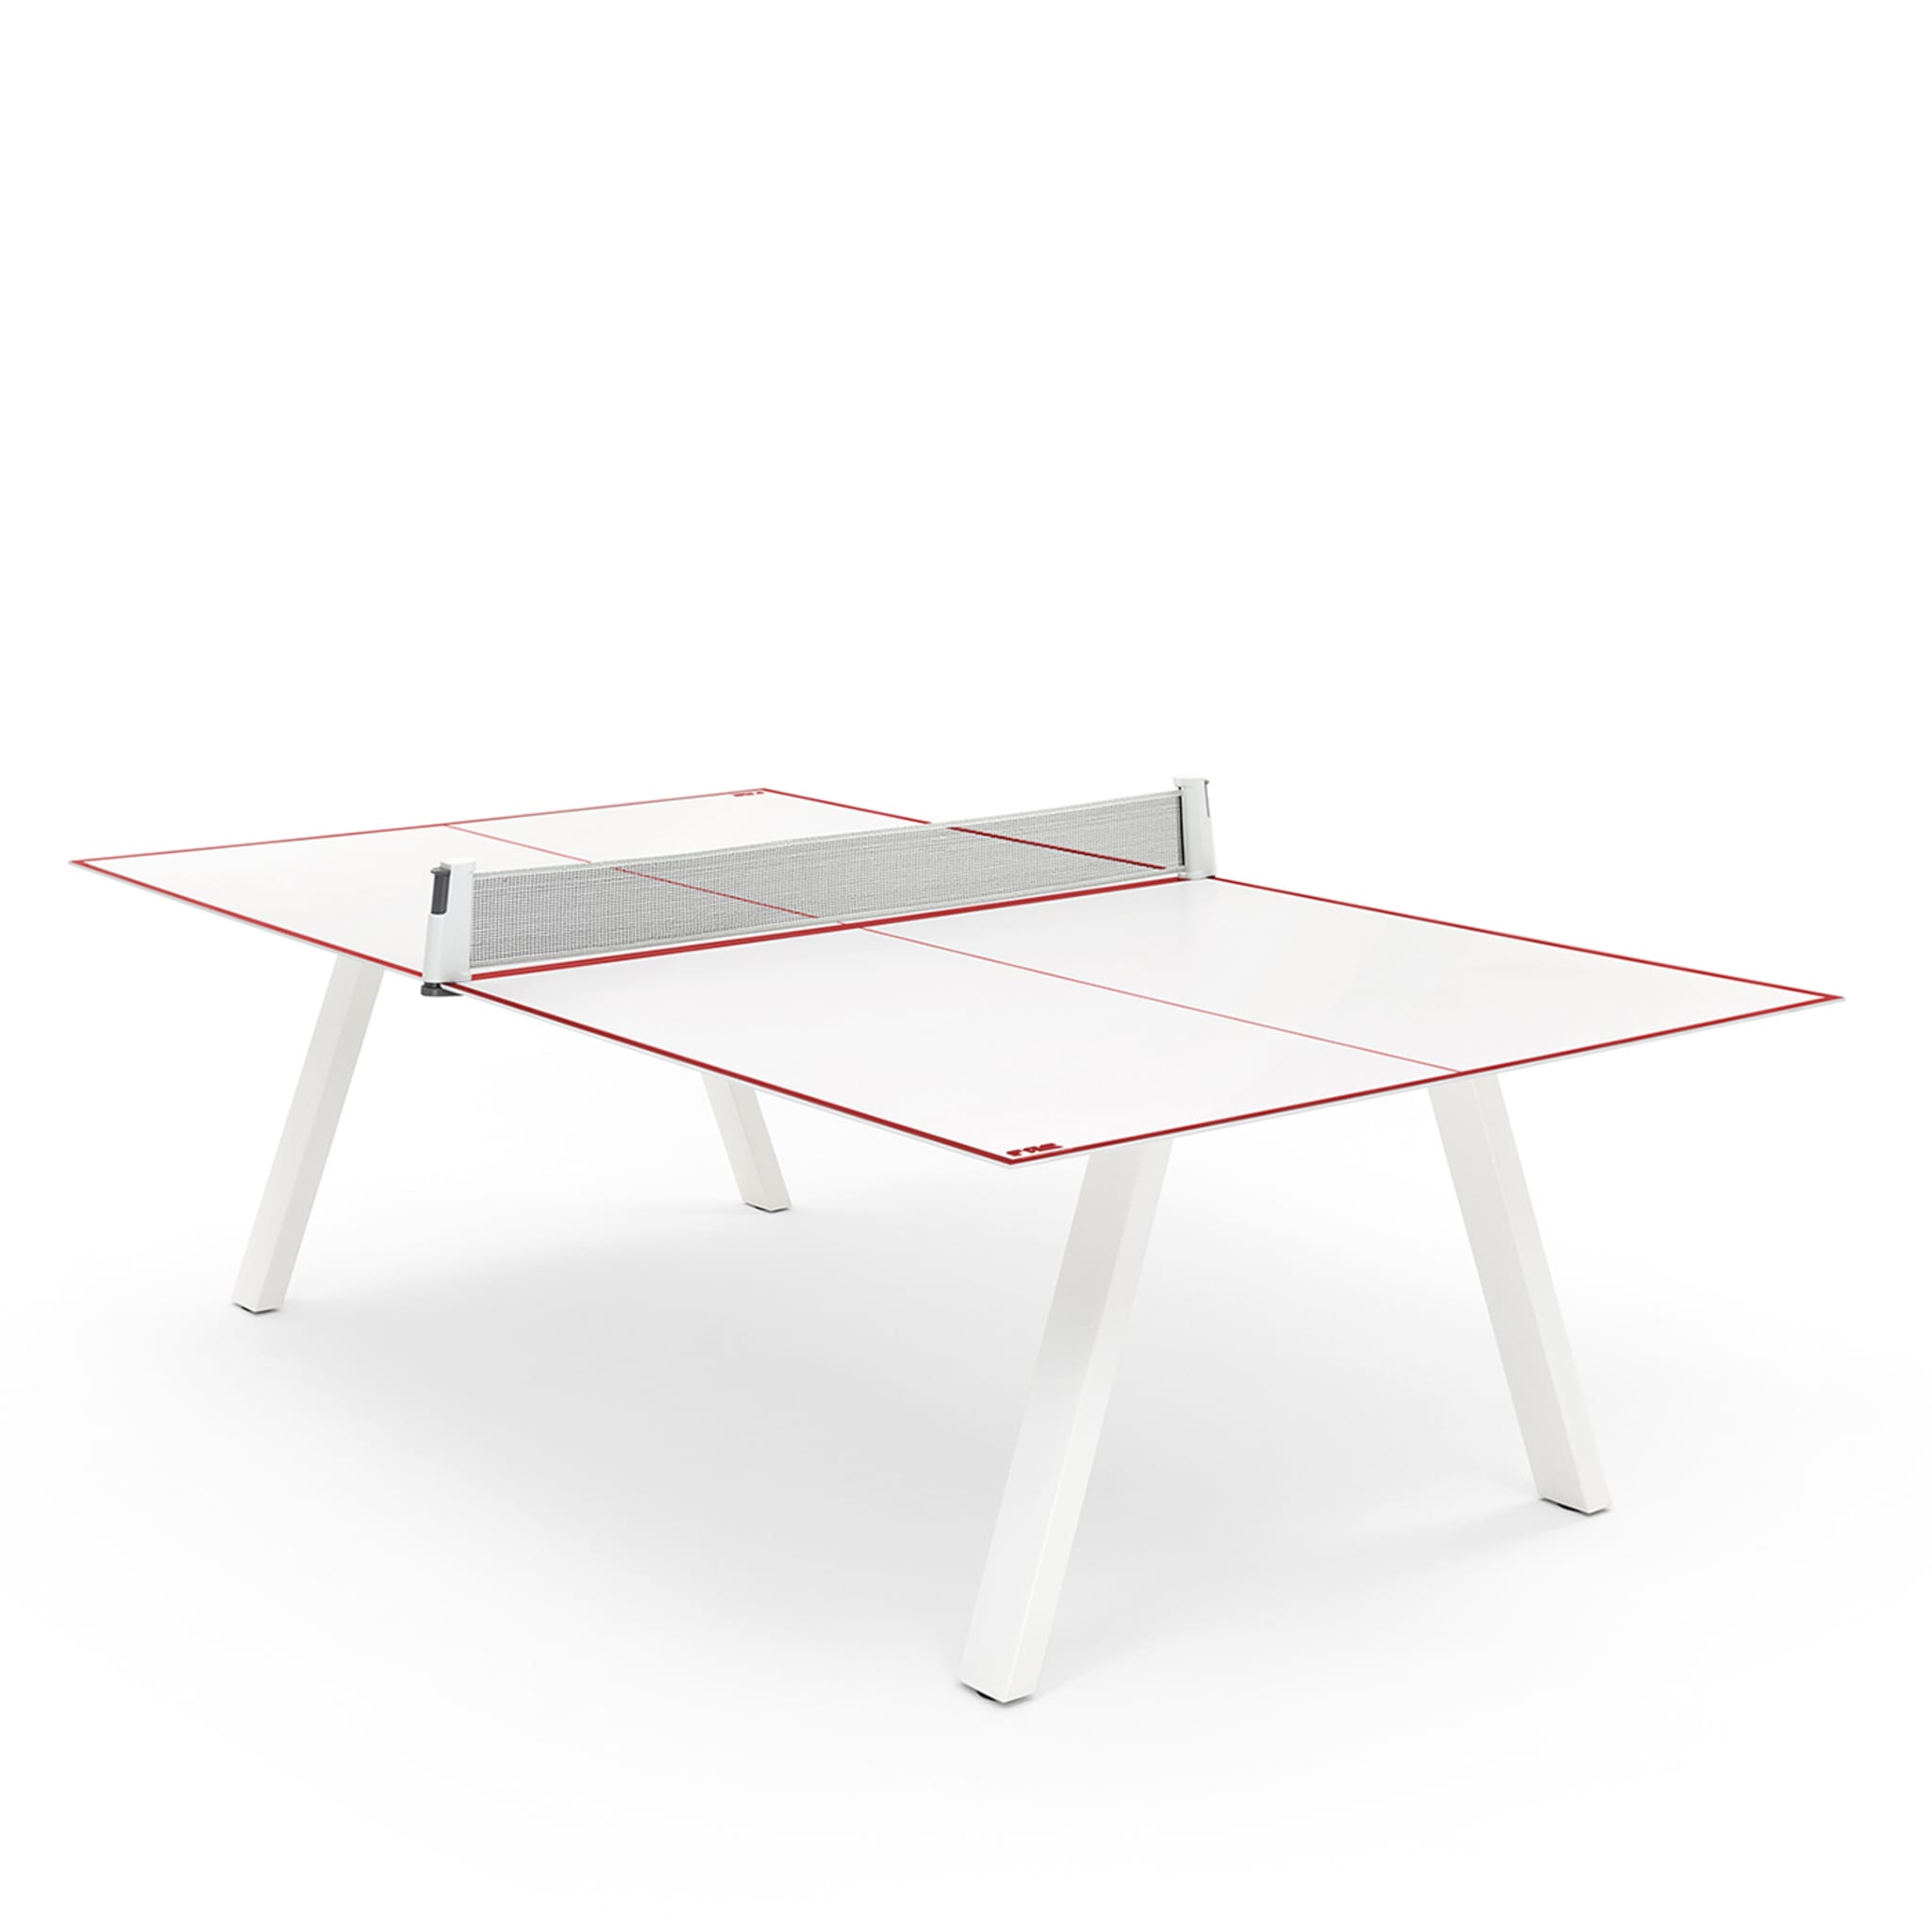 Weißer Grasshopper Tischtennistisch für draußen von Basaglia + Rota Nodari - Alternative Ansicht 1